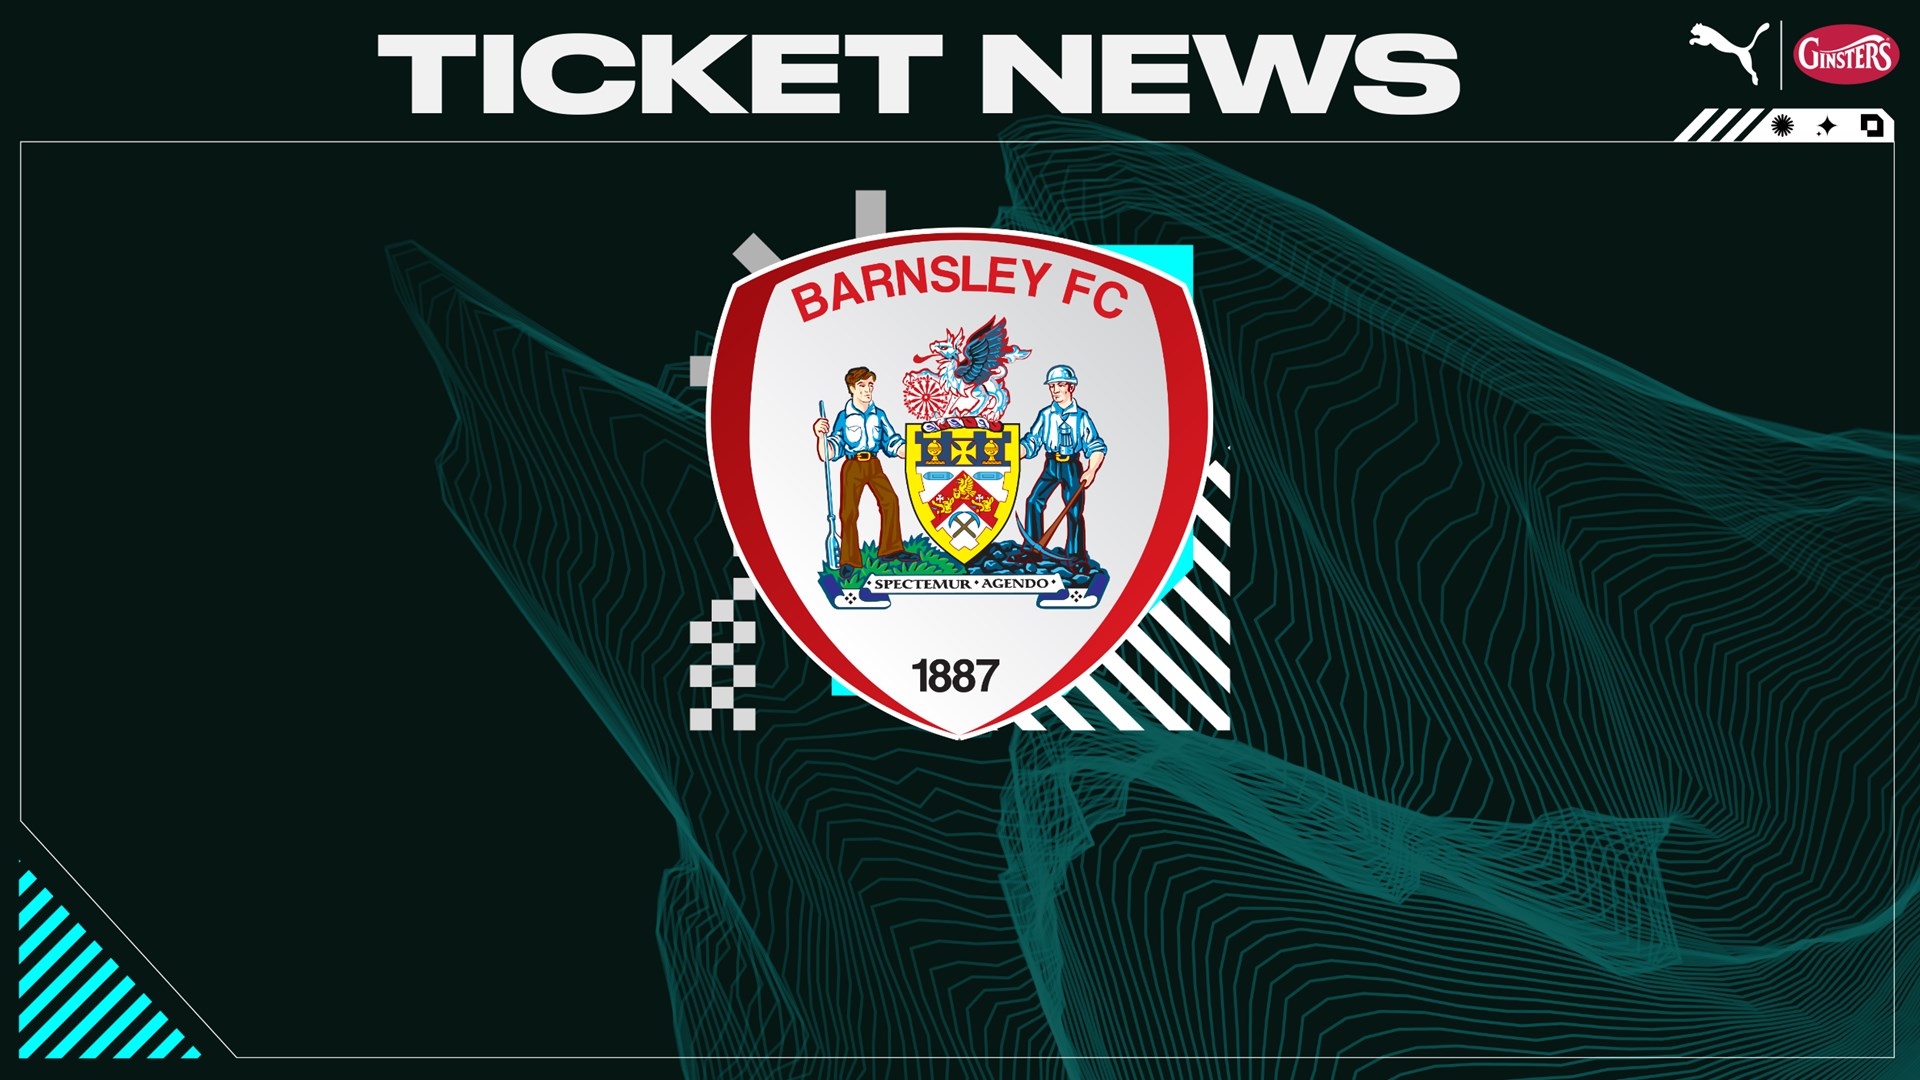 Ticket News Barnsley